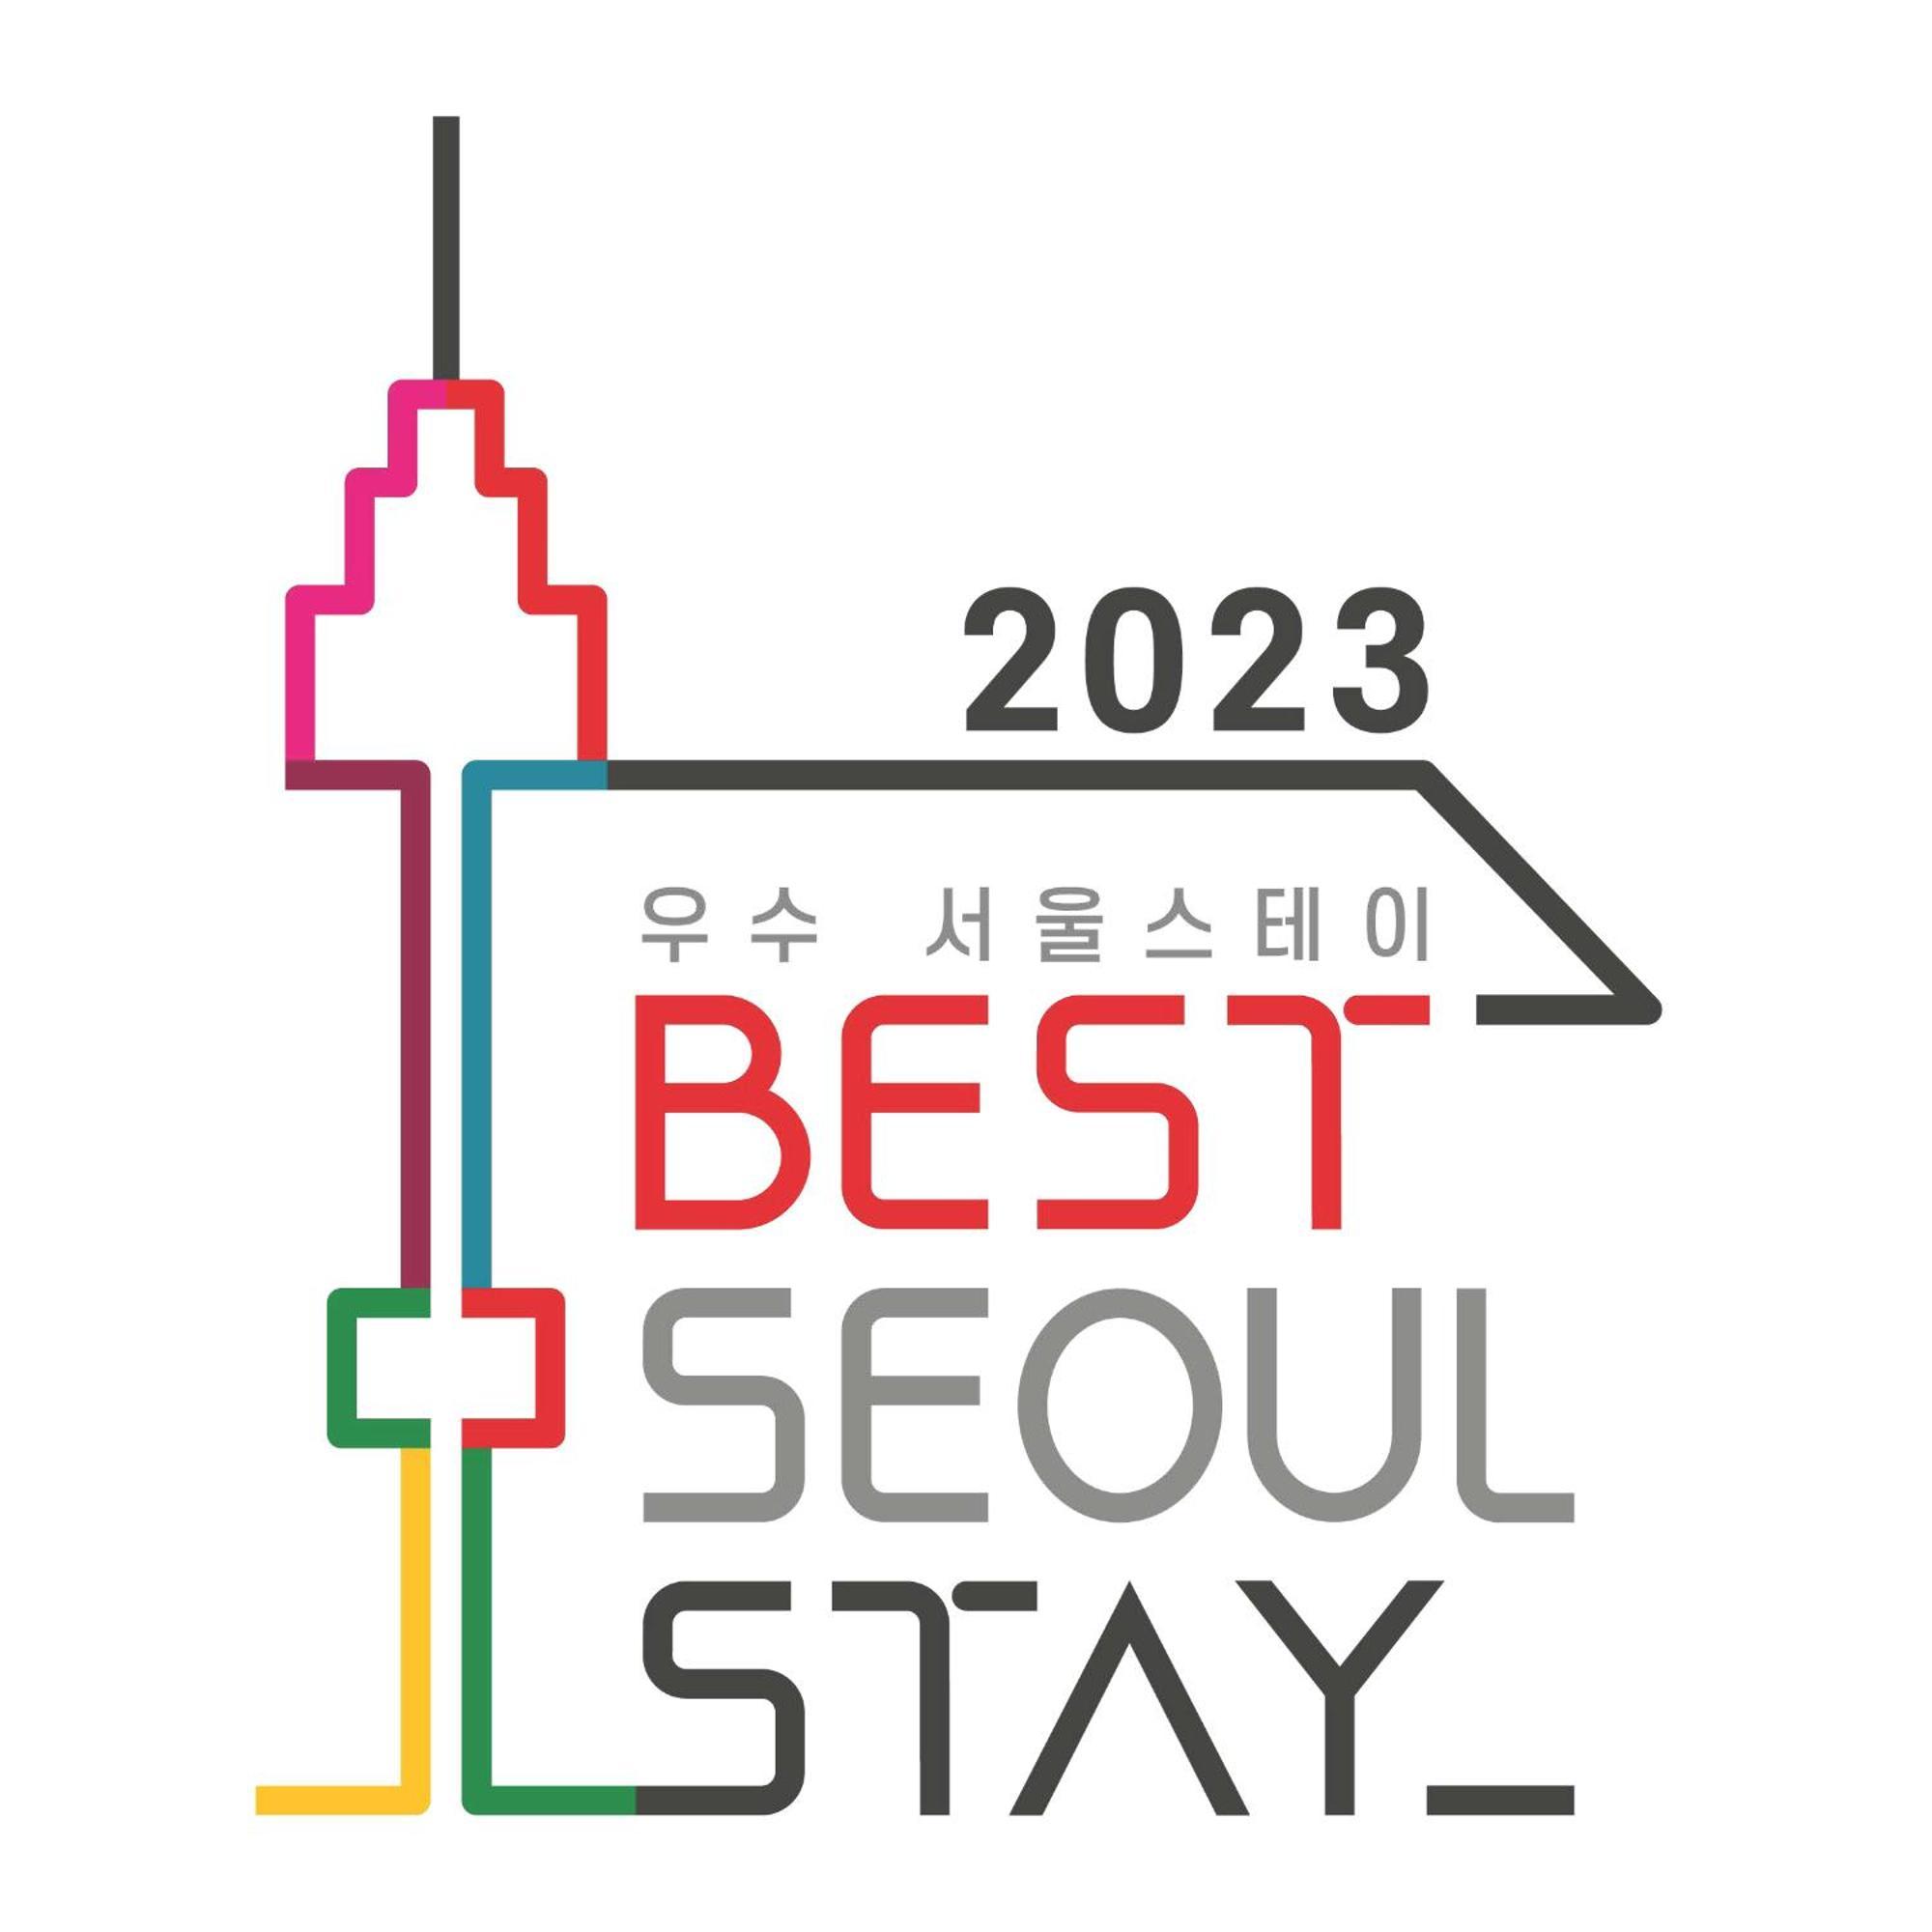 Batwo Stay - For Foreigners Only Seul Zewnętrze zdjęcie